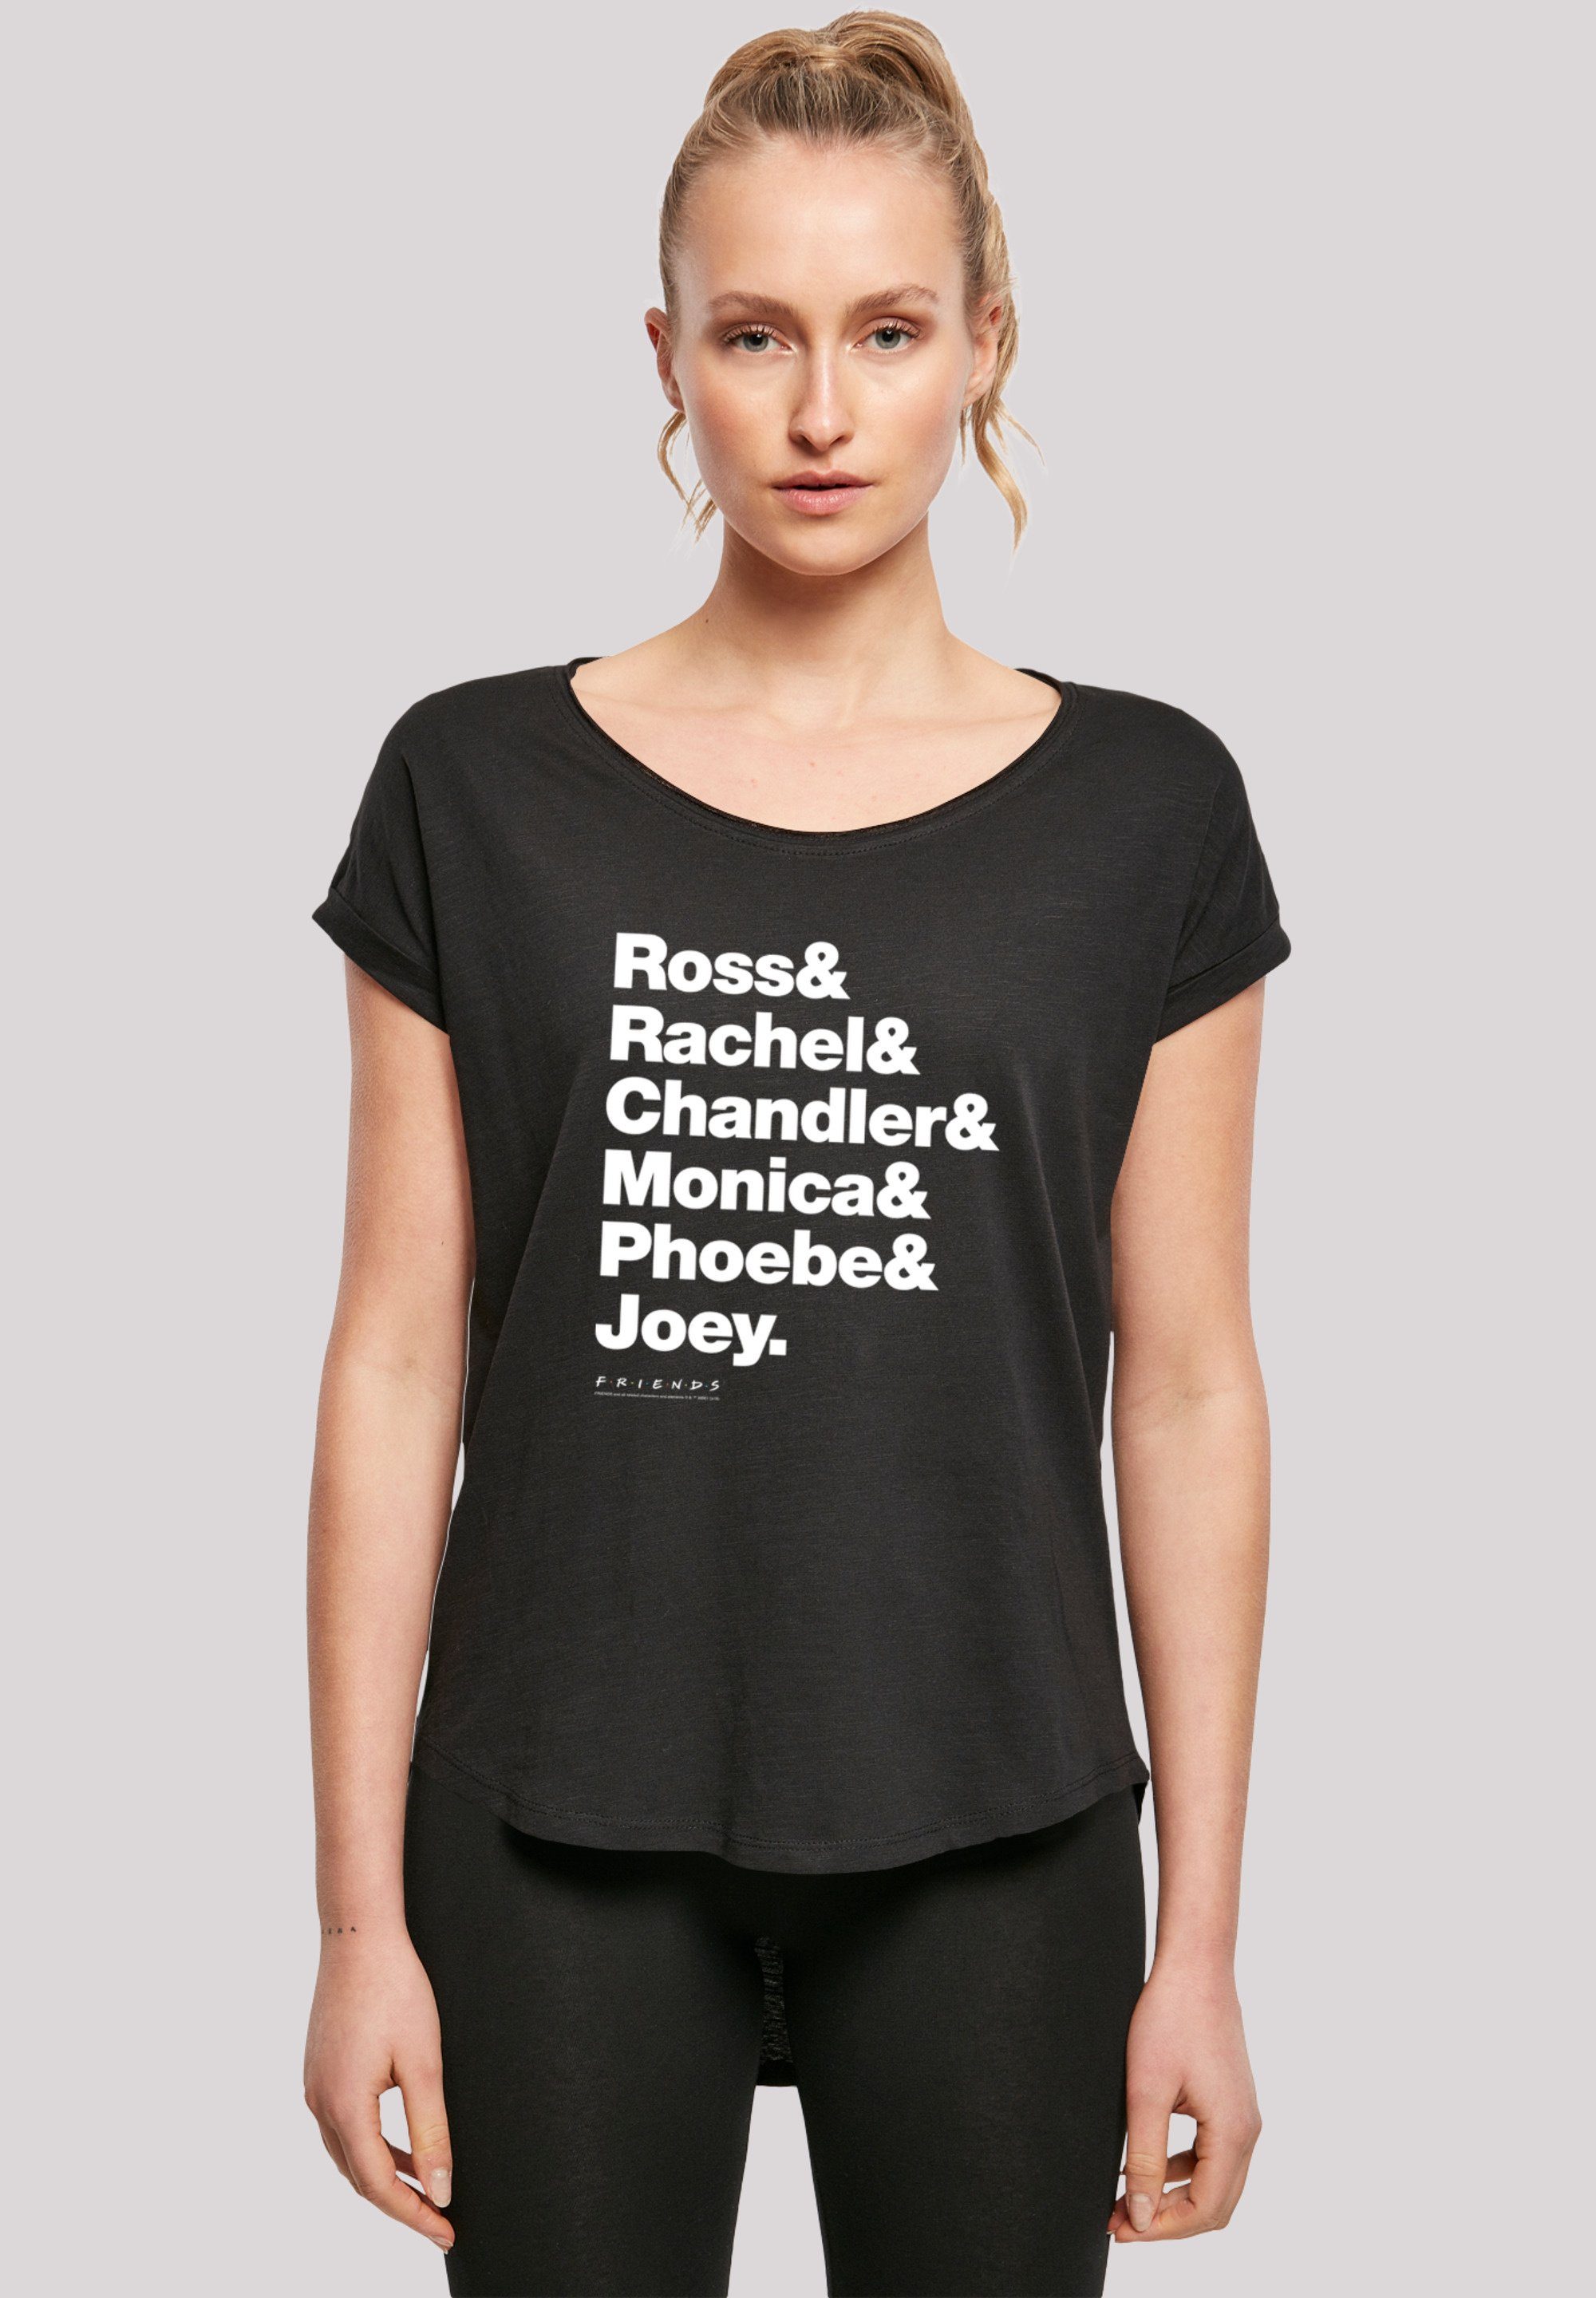 F4NT4STIC T-Shirt FRIENDS Ross & Rachel & Chandler & Monica & Phoebe & Joey  Print, Sehr weicher Baumwollstoff mit hohem Tragekomfort